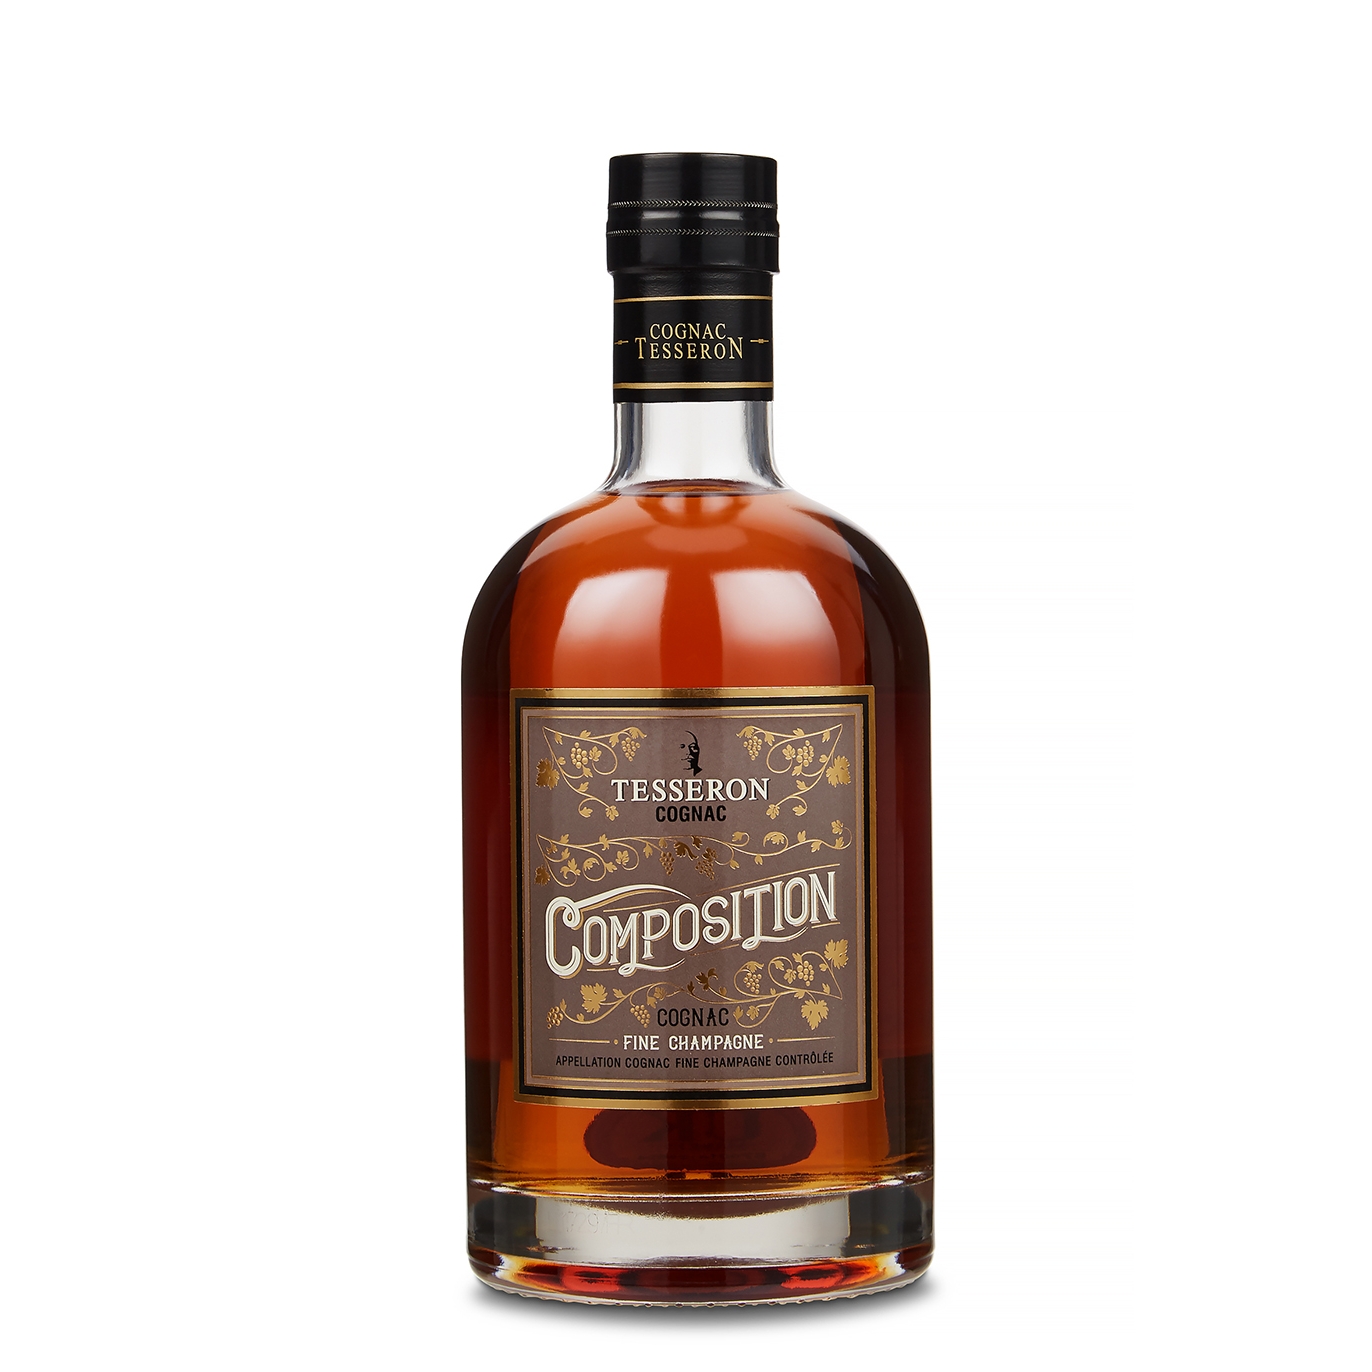 Tesseron Composition Cognac, Beverages, Glass